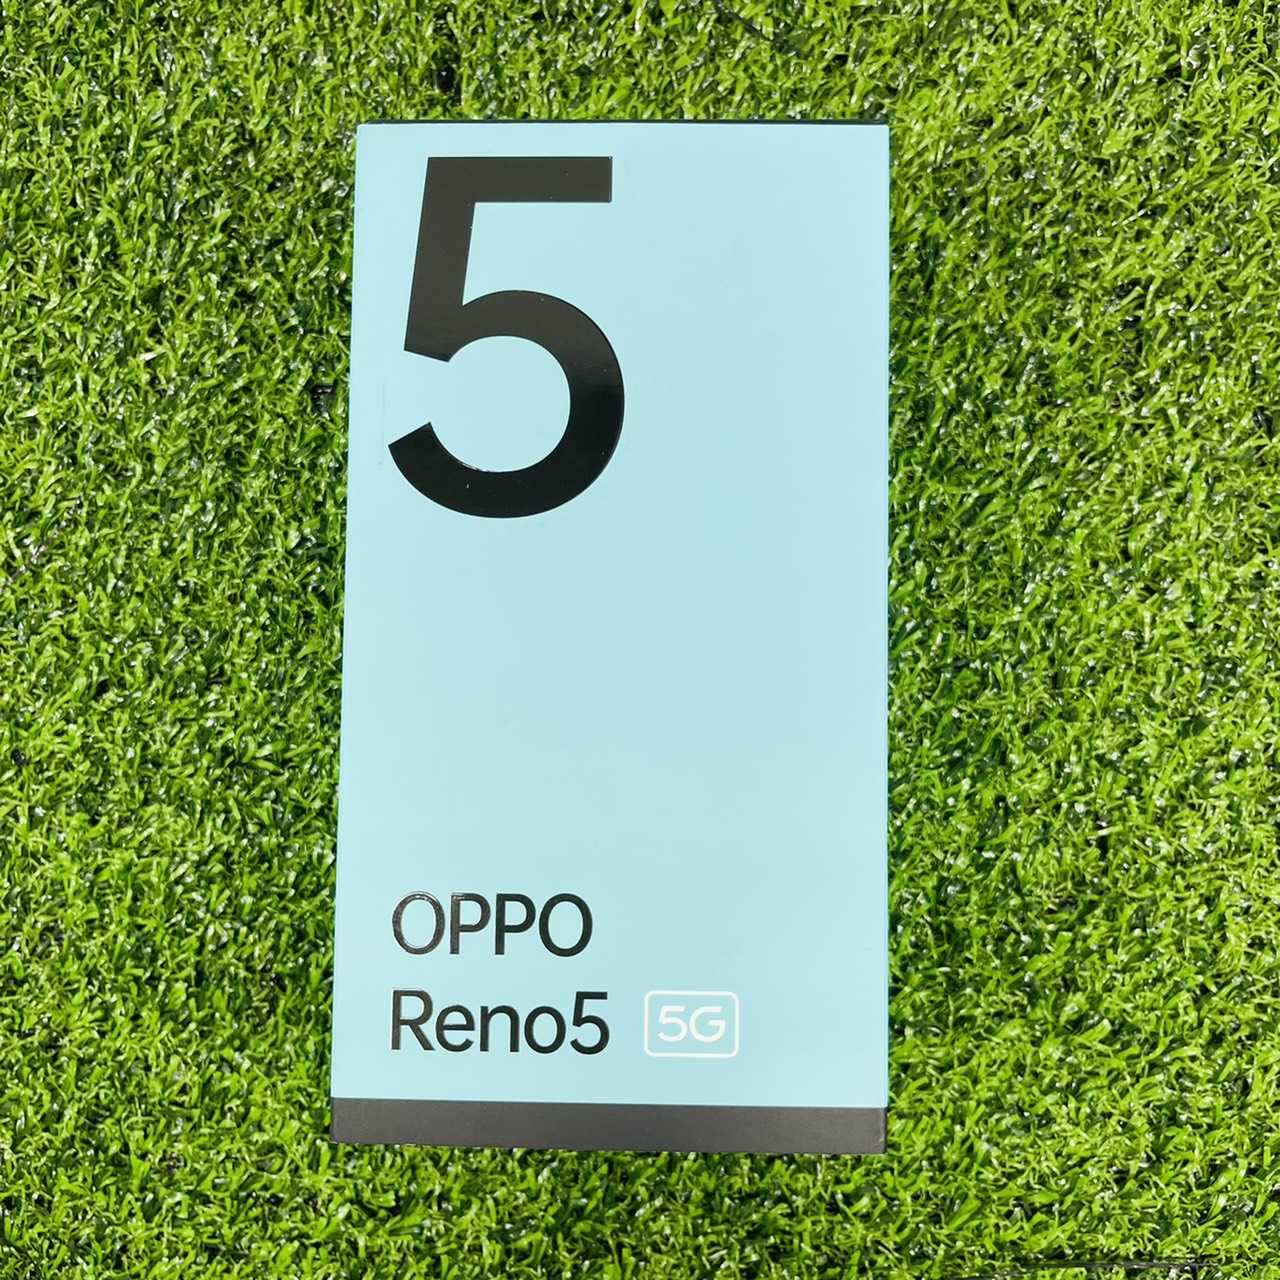 【福利機】OPPO Reno5 8G+128G 6.43吋 5G  原廠展示機 近全新